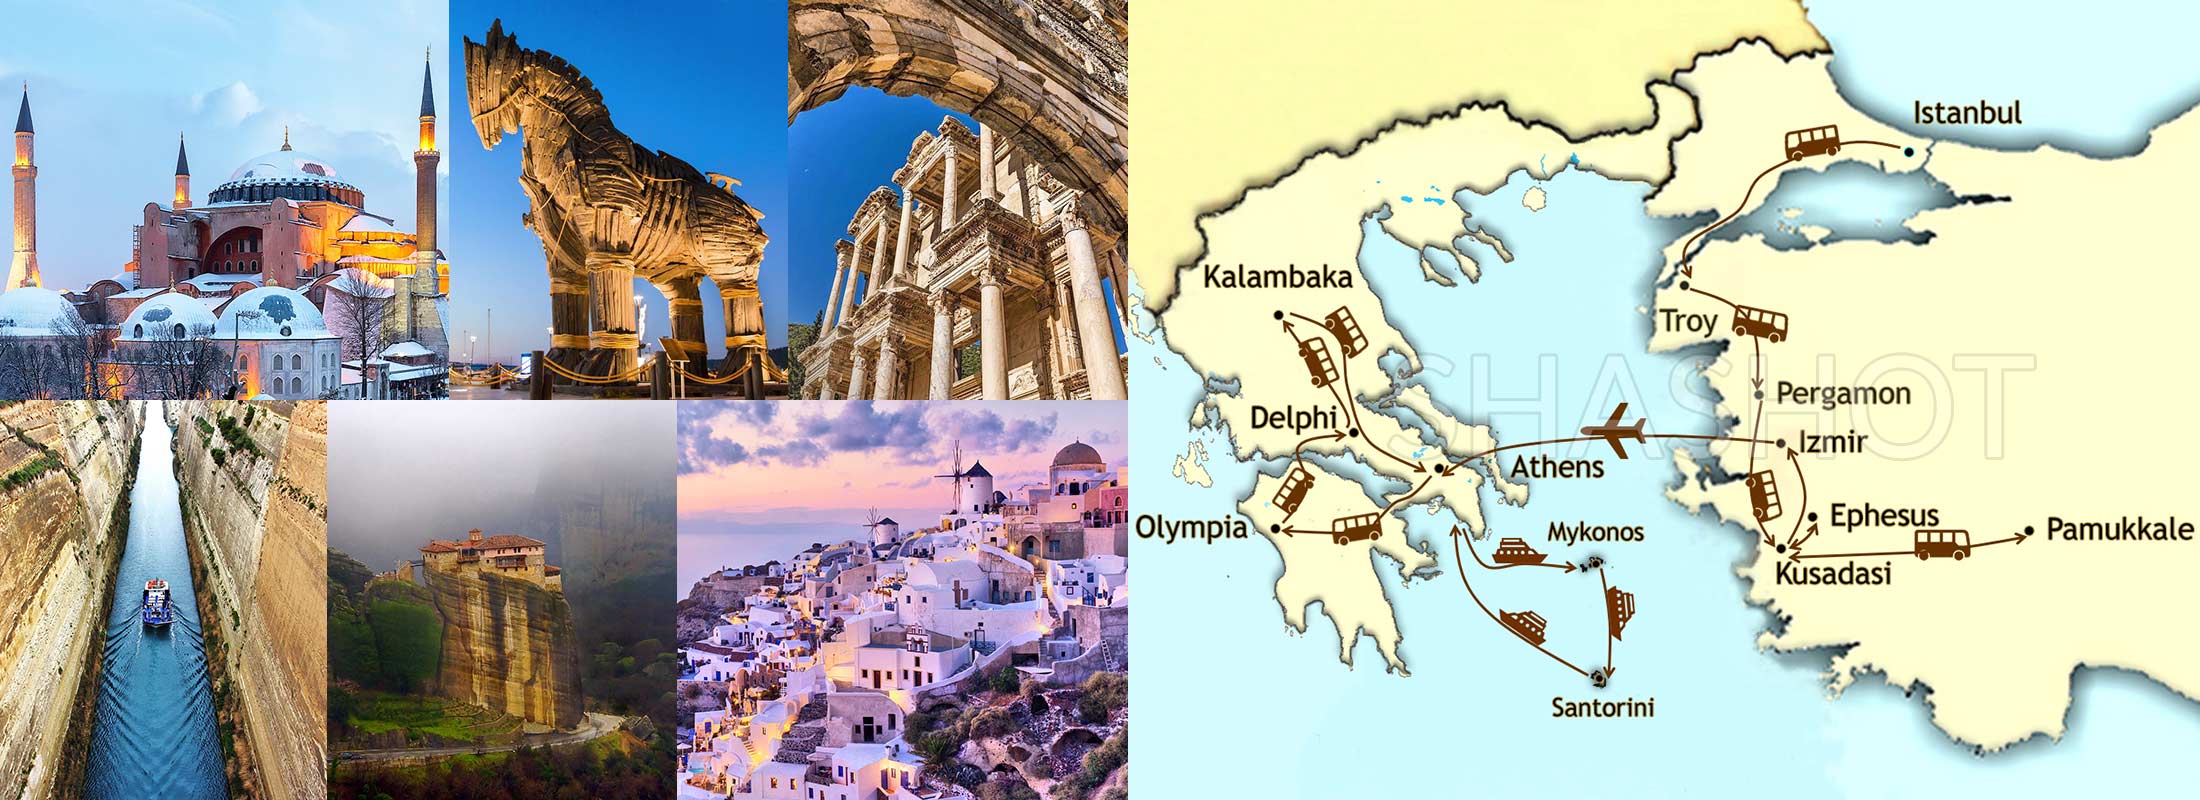 istanbul-troy-pergamon-ephesus-pamukkale-hierapolis-athens-olympia-meteora-delphi-mykonos-santorini-greece-turkey-package-tours-map